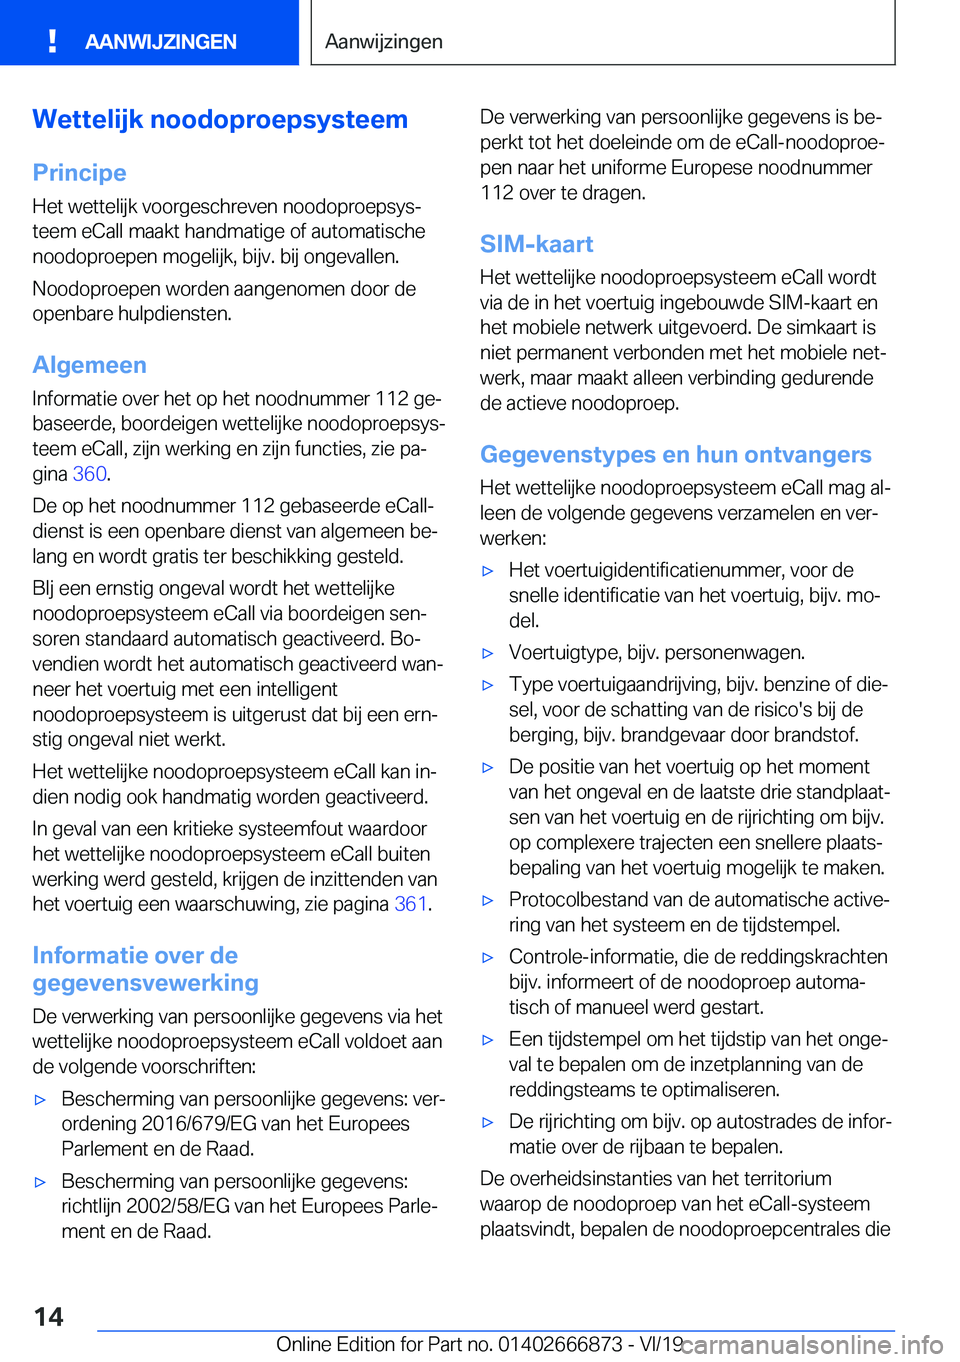 BMW X4 M 2020  Instructieboekjes (in Dutch) �W�e�t�t�e�l�i�j�k��n�o�o�d�o�p�r�o�e�p�s�y�s�t�e�e�m
�P�r�i�n�c�i�p�e �H�e�t��w�e�t�t�e�l�i�j�k��v�o�o�r�g�e�s�c�h�r�e�v�e�n��n�o�o�d�o�p�r�o�e�p�s�y�sj
�t�e�e�m��e�C�a�l�l��m�a�a�k�t��h�a�n�